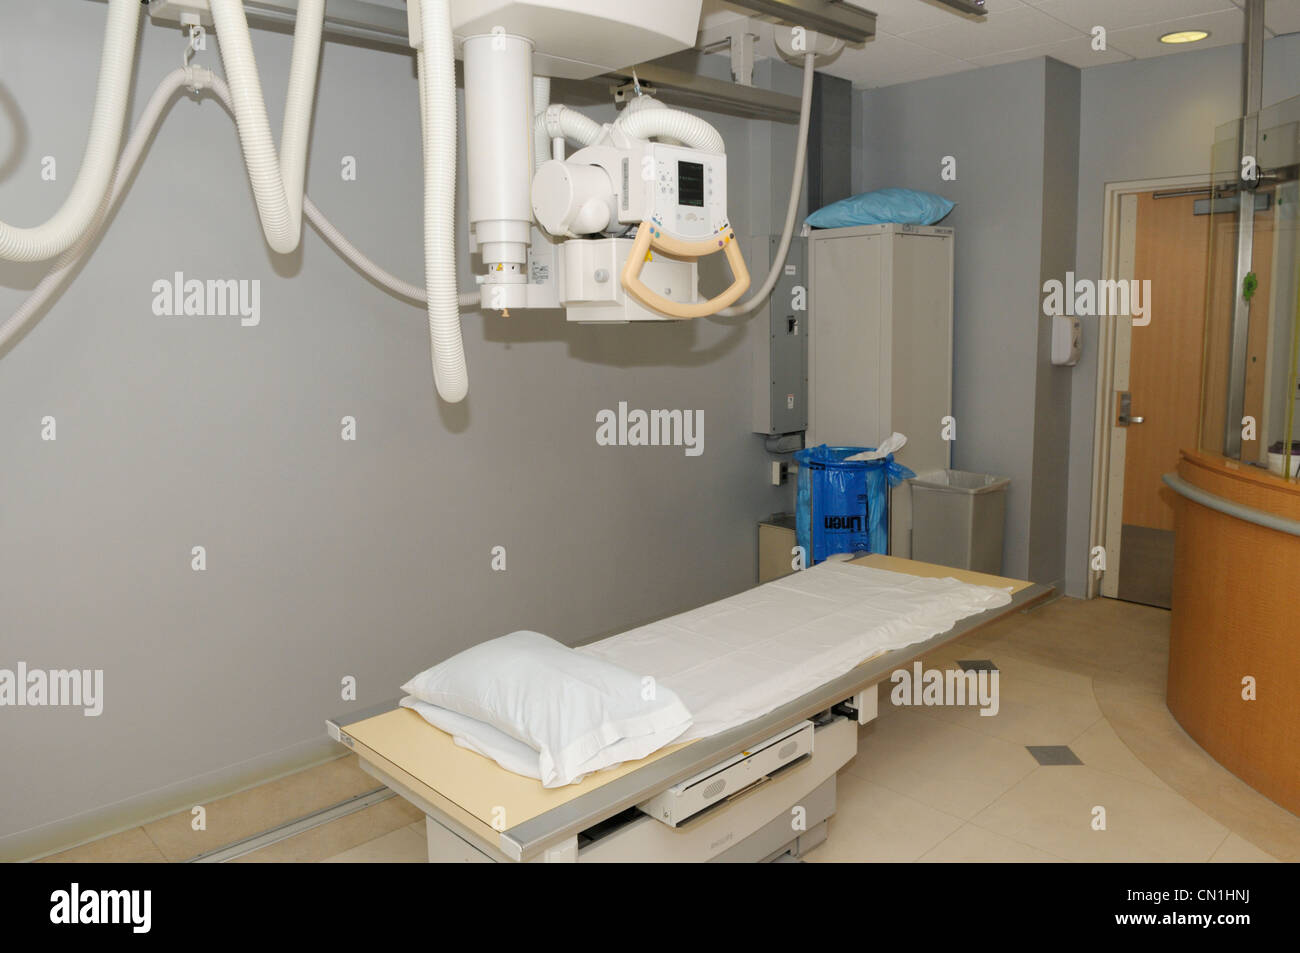 X-ray room at a hospital Stock Photo